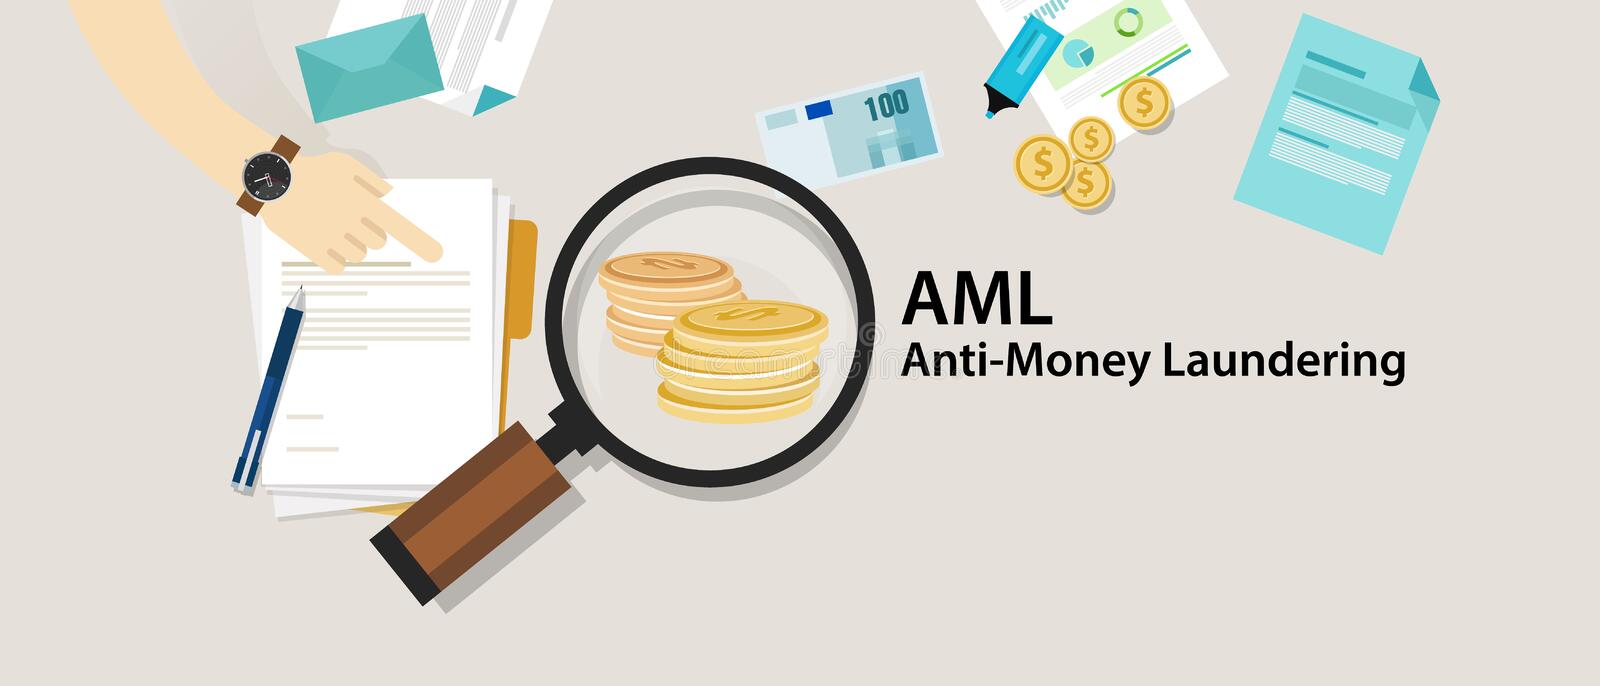 AML - Chống rửa tiền là gì?